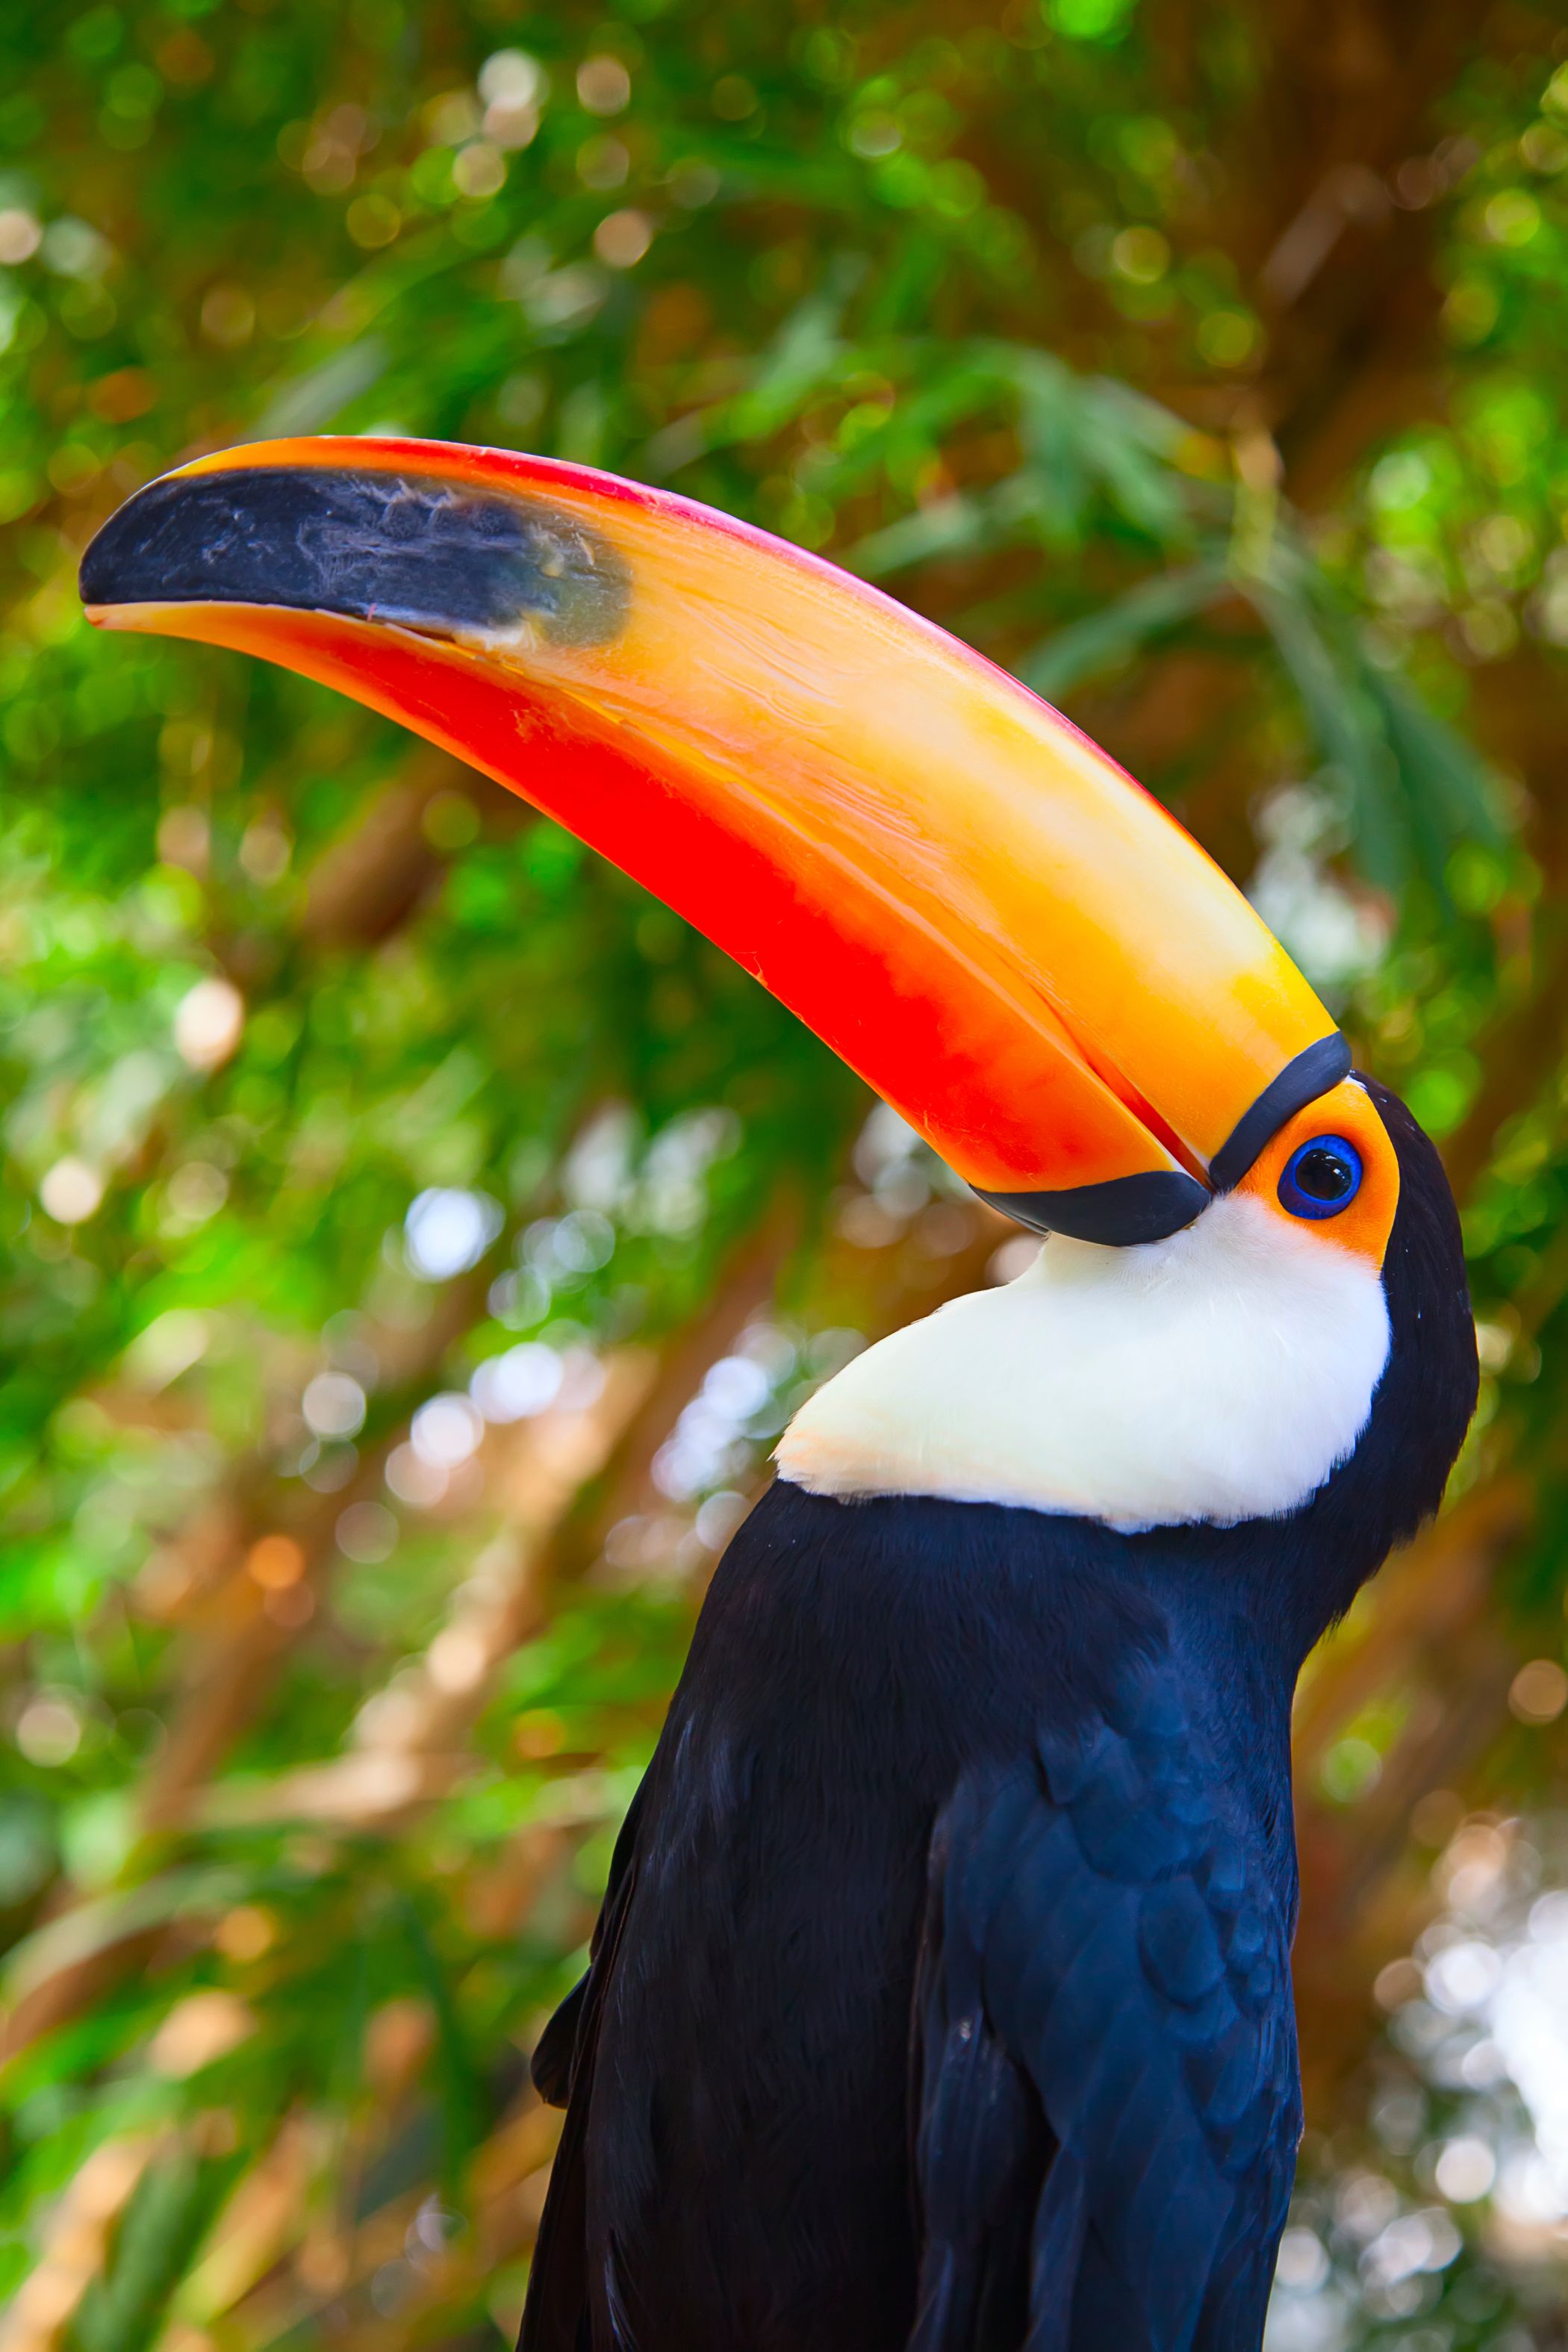 Magnifique toucan de la forêt amazonienne.